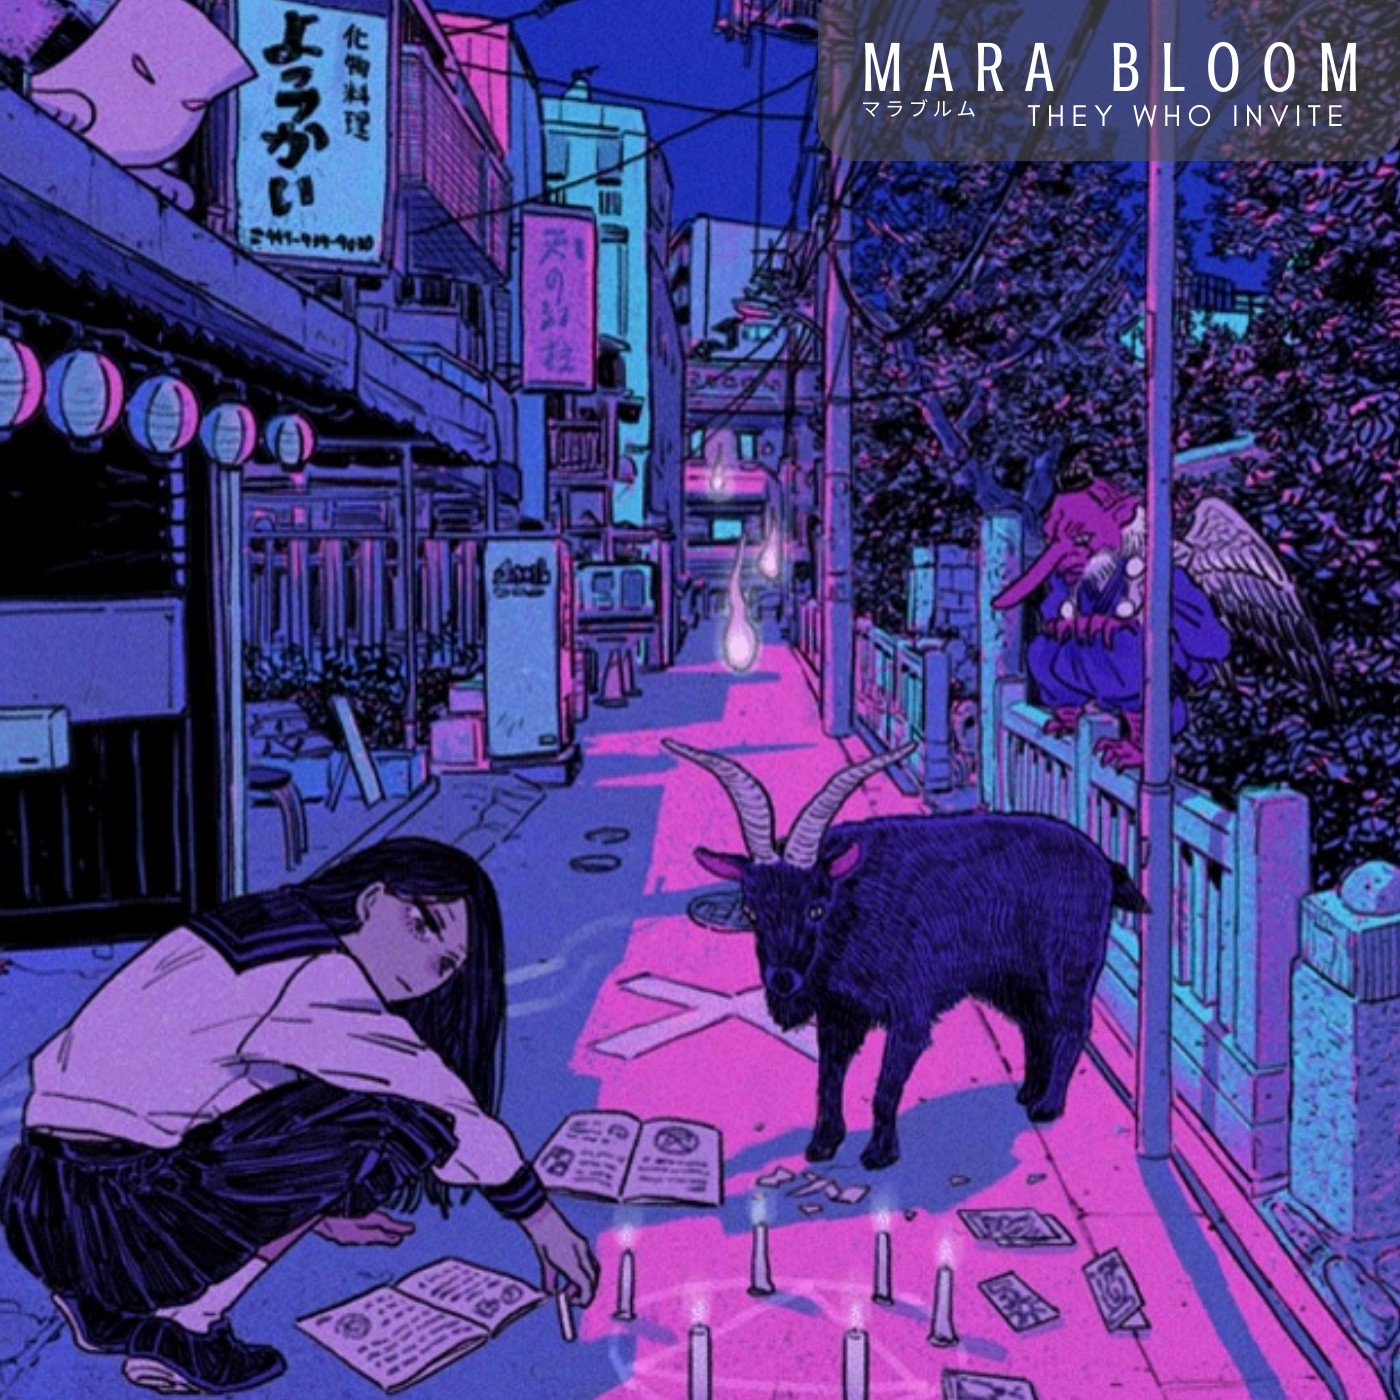 Mara Bloom ‘They Who Invite’ album artwork